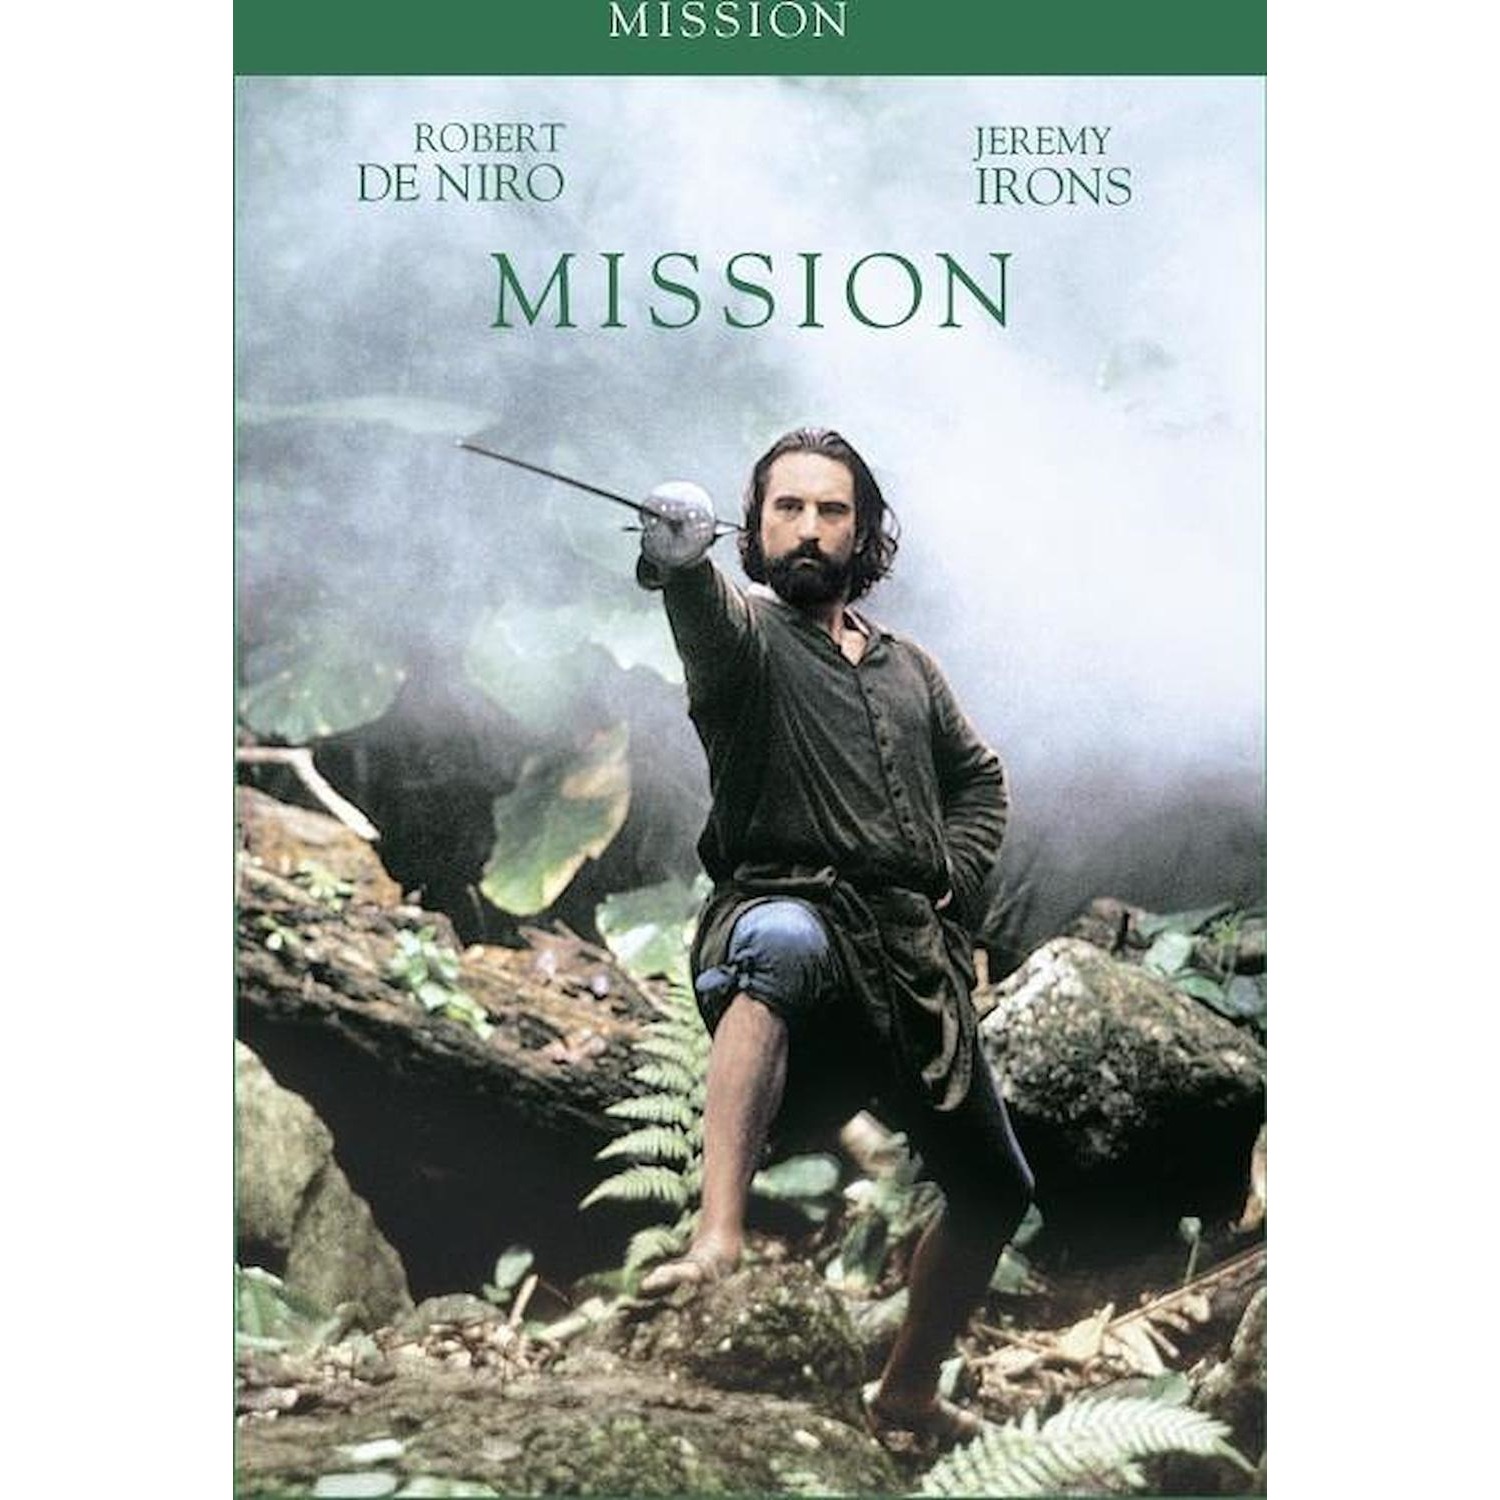 Immagine per DVD Mission da DIMOStore